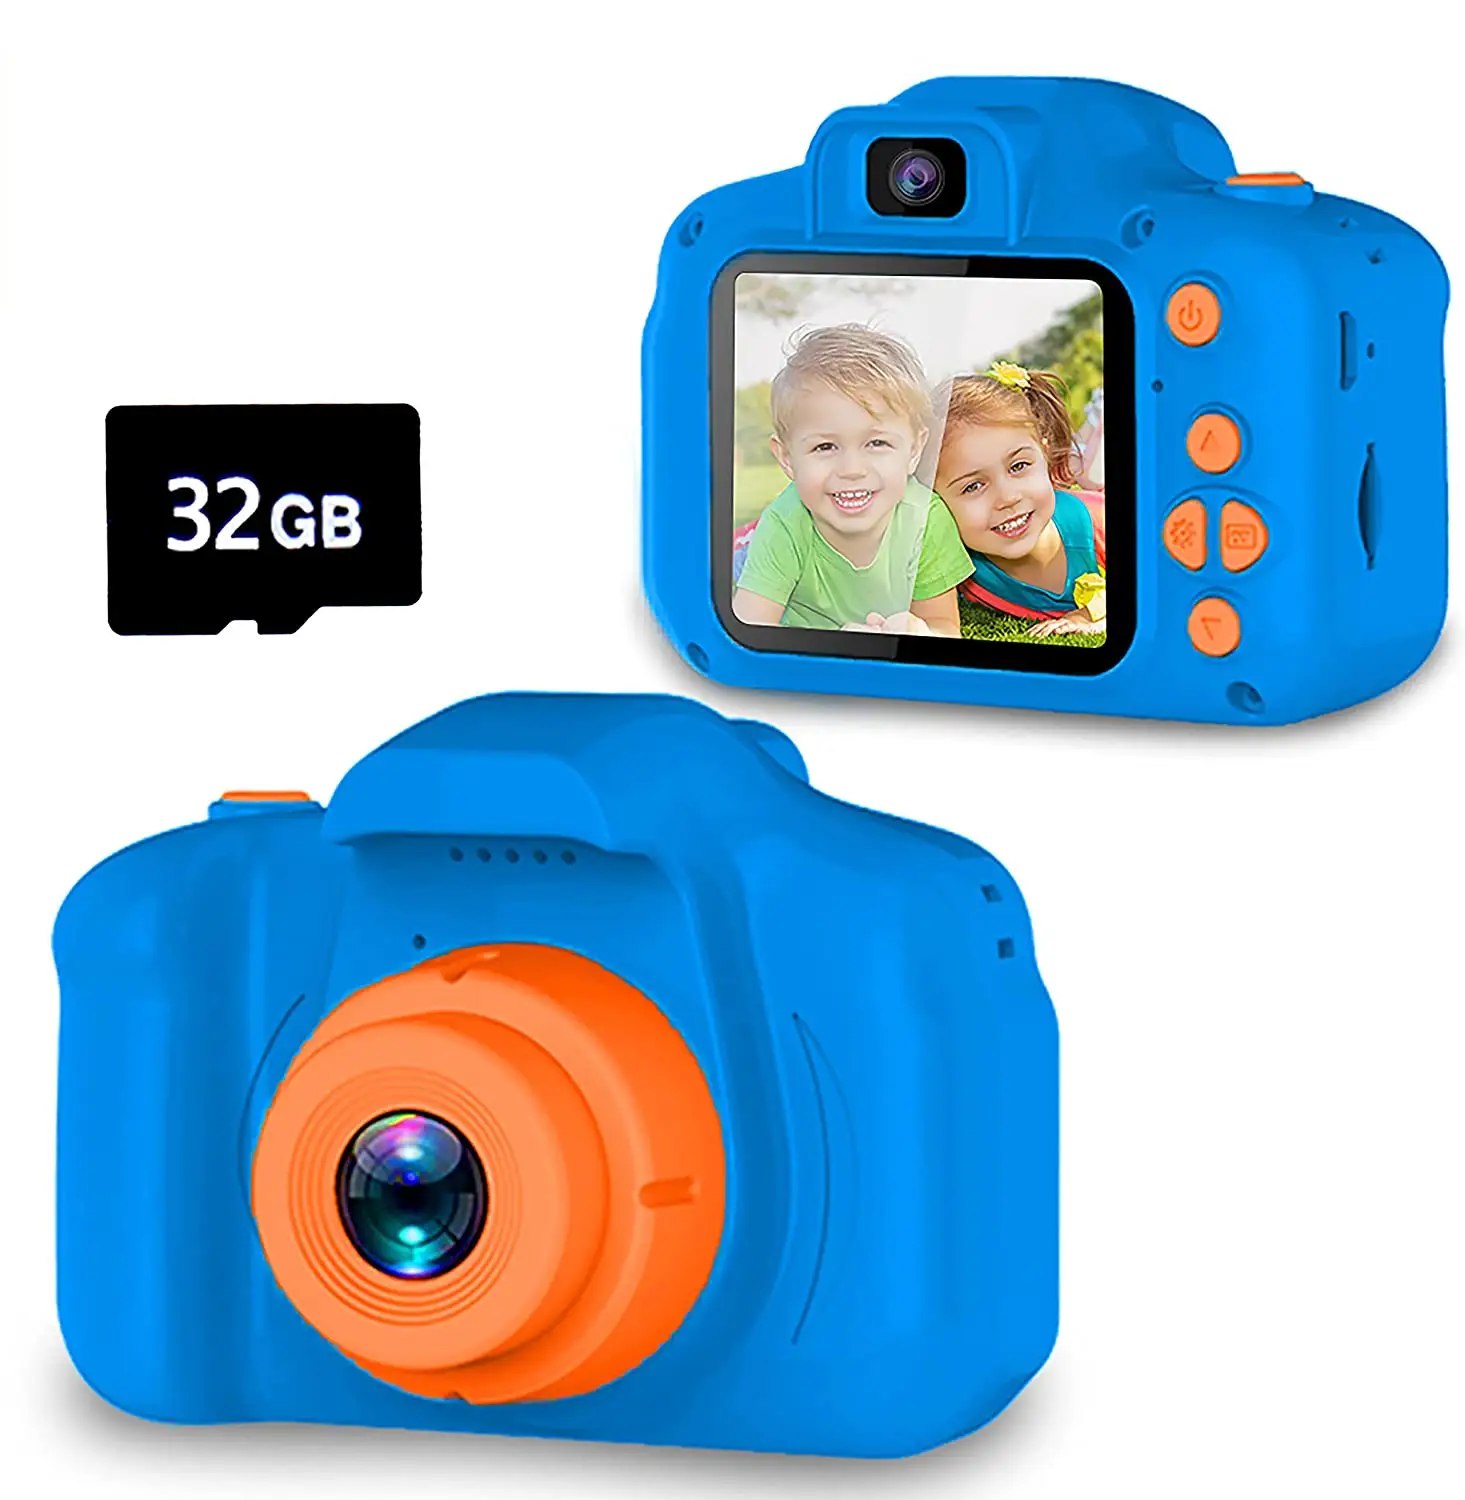 มินิเด็กกล้องสำหรับเด็กหญิงเด็กชาย20MP กล้องดิจิตอลสำหรับเด็กวัยหัดเดินเด็กเซลฟีกล้องวิดีโอ2.0นิ้วหน้าจอ IPS